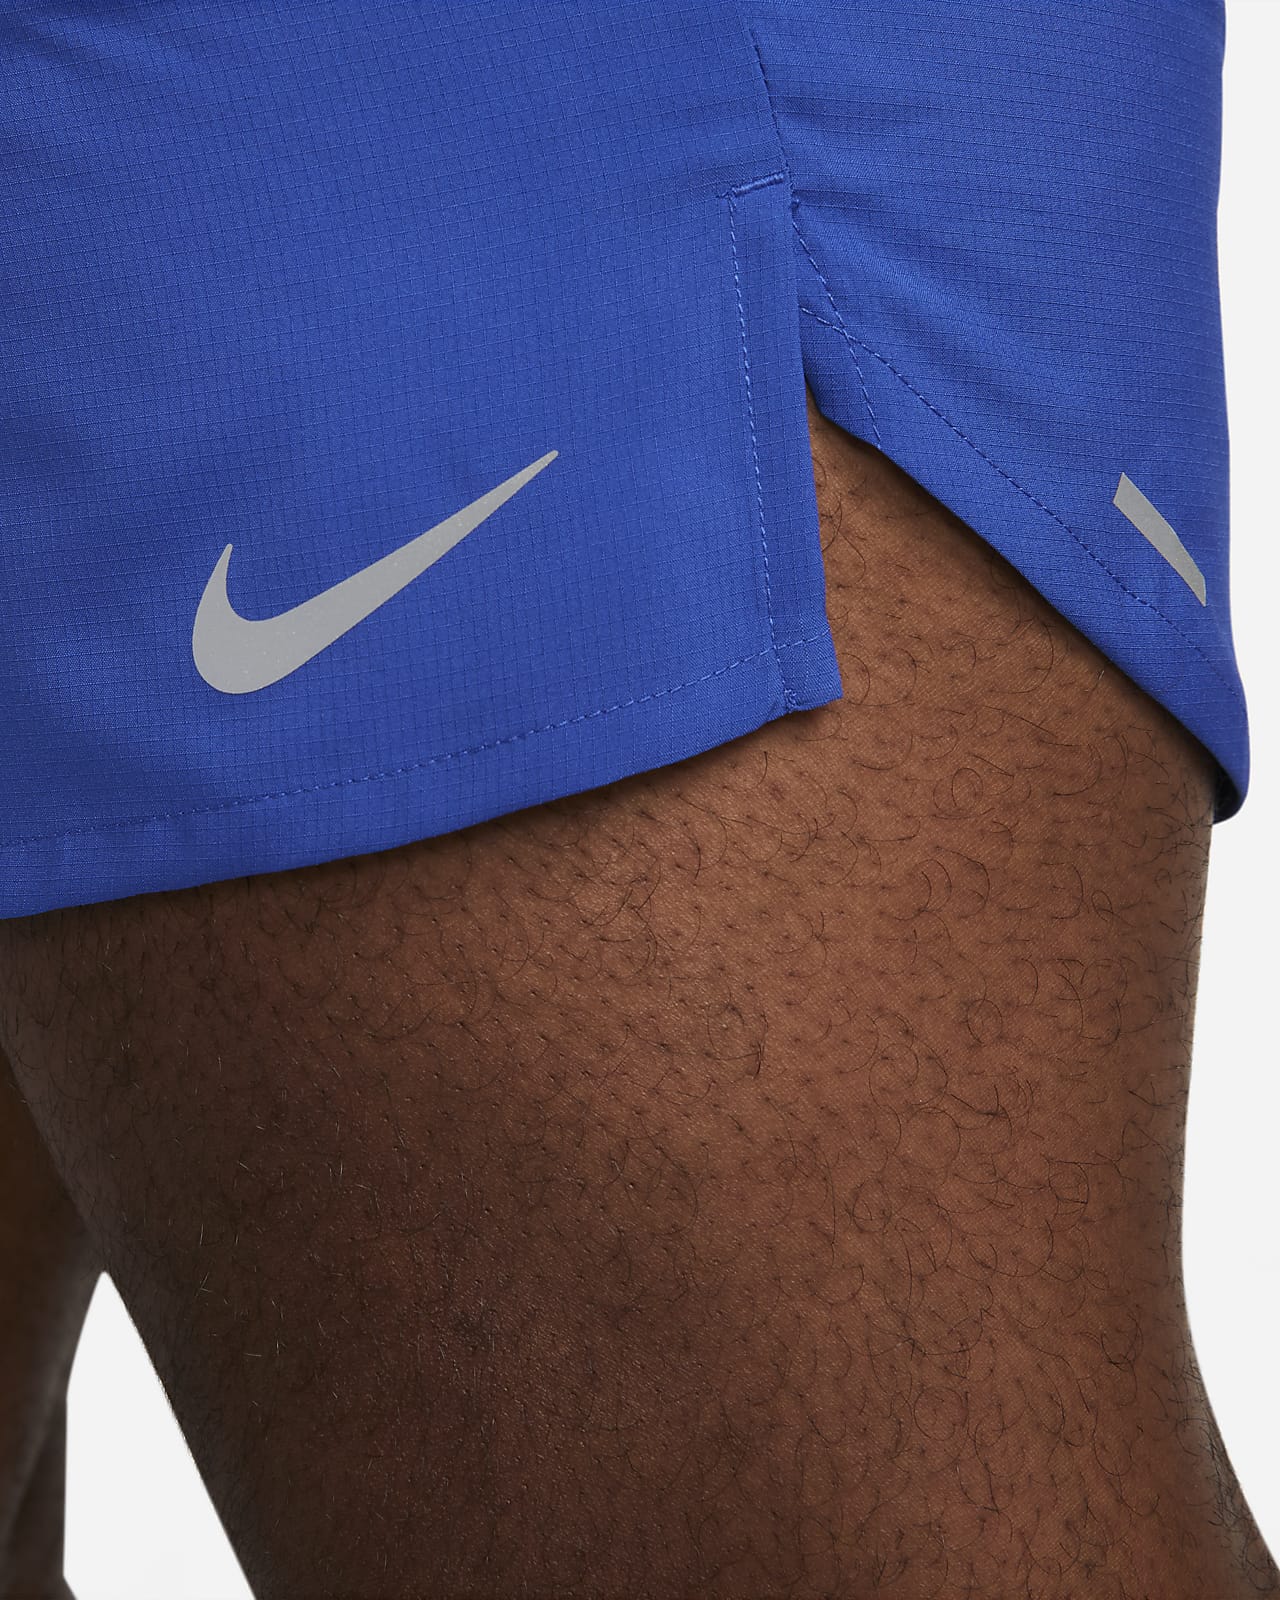 Nike, Men's 7 Running Shorts, Black/White